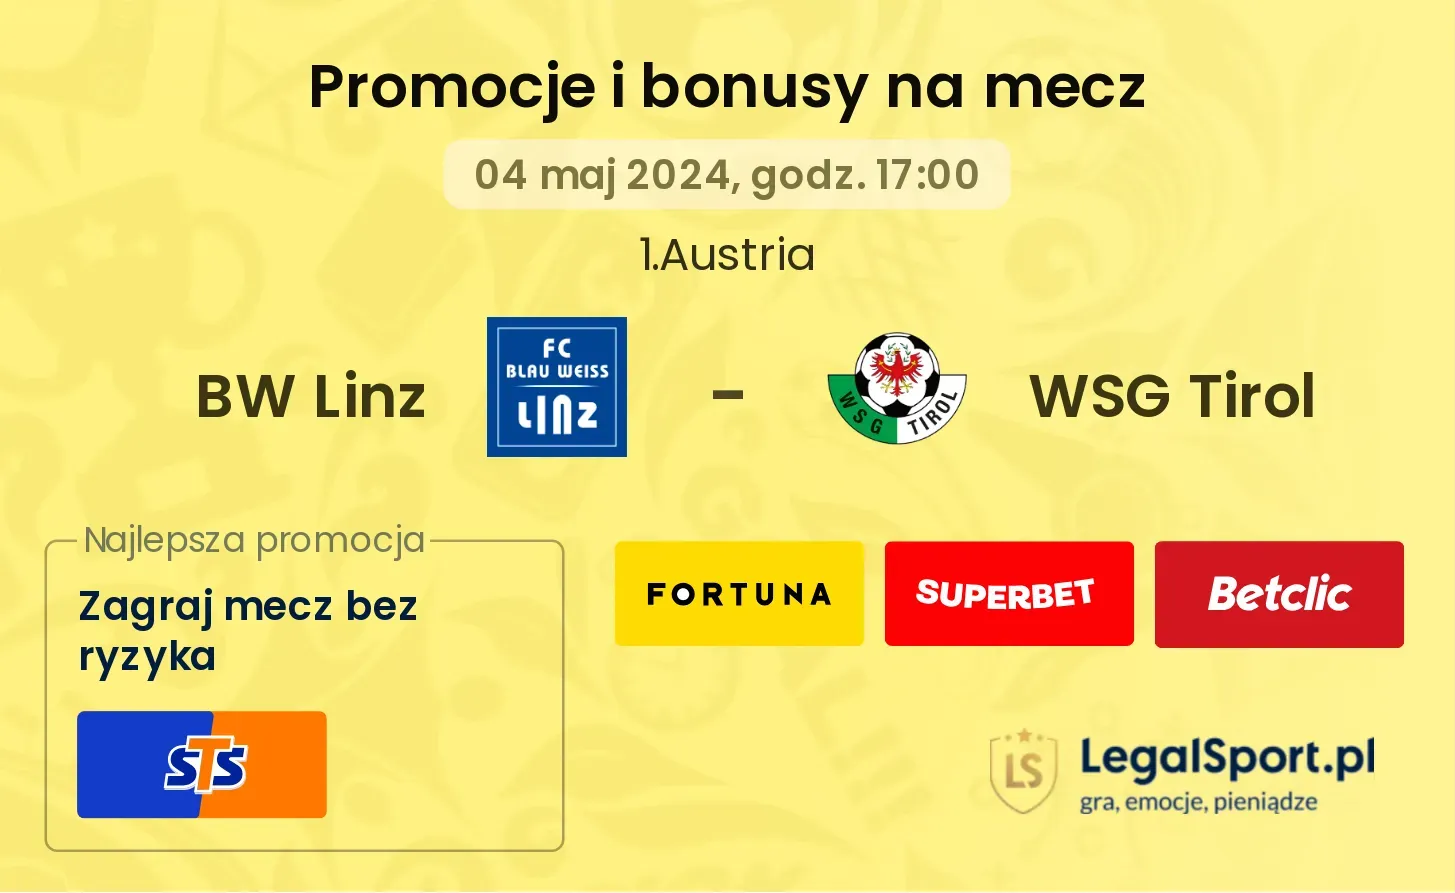 BW Linz - WSG Tirol promocje bonusy na mecz